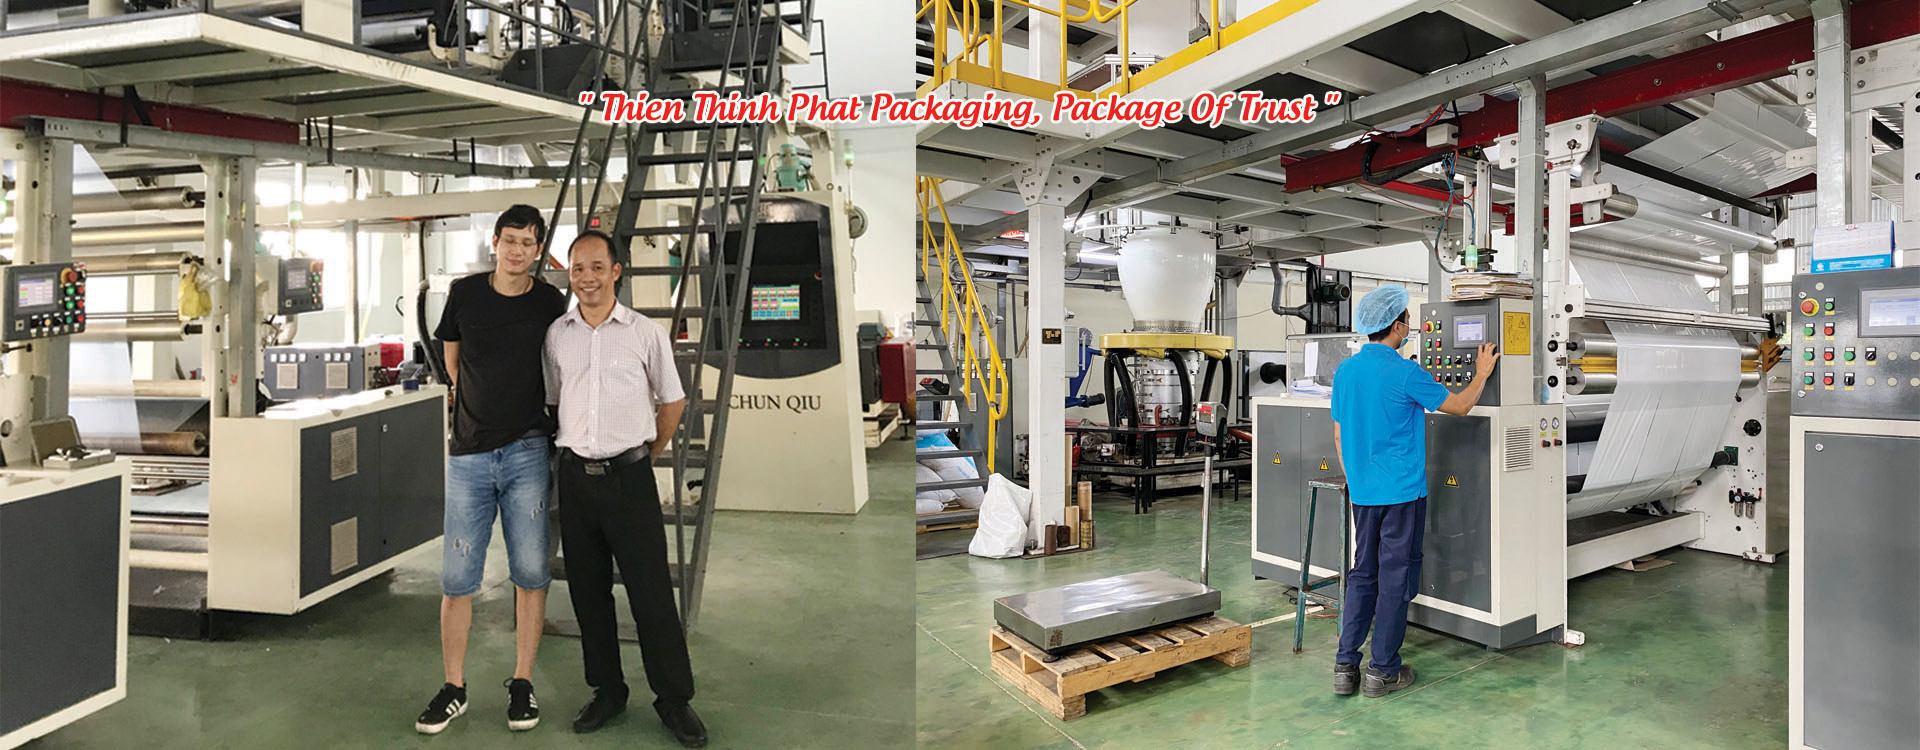 Rotogravure printing machine operator jobs